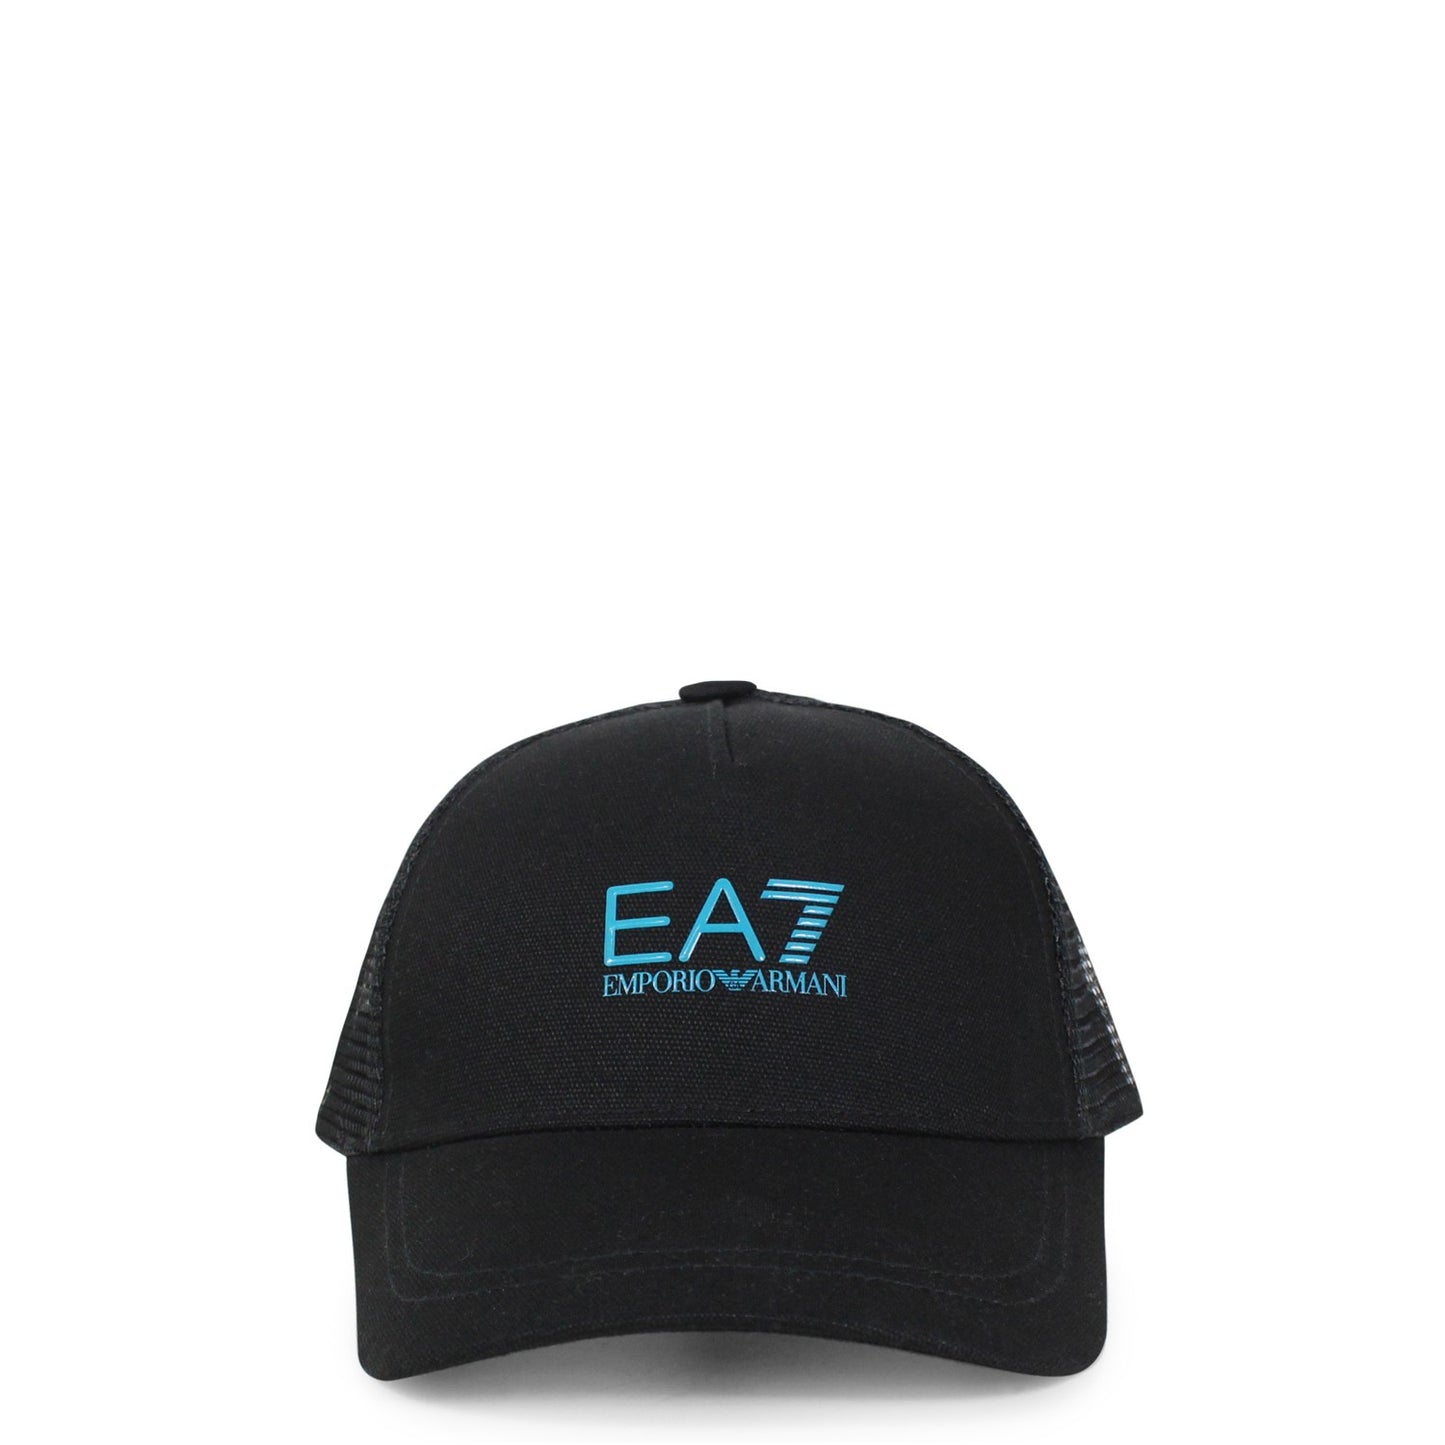 Gorra negra EA7 con logo azul 